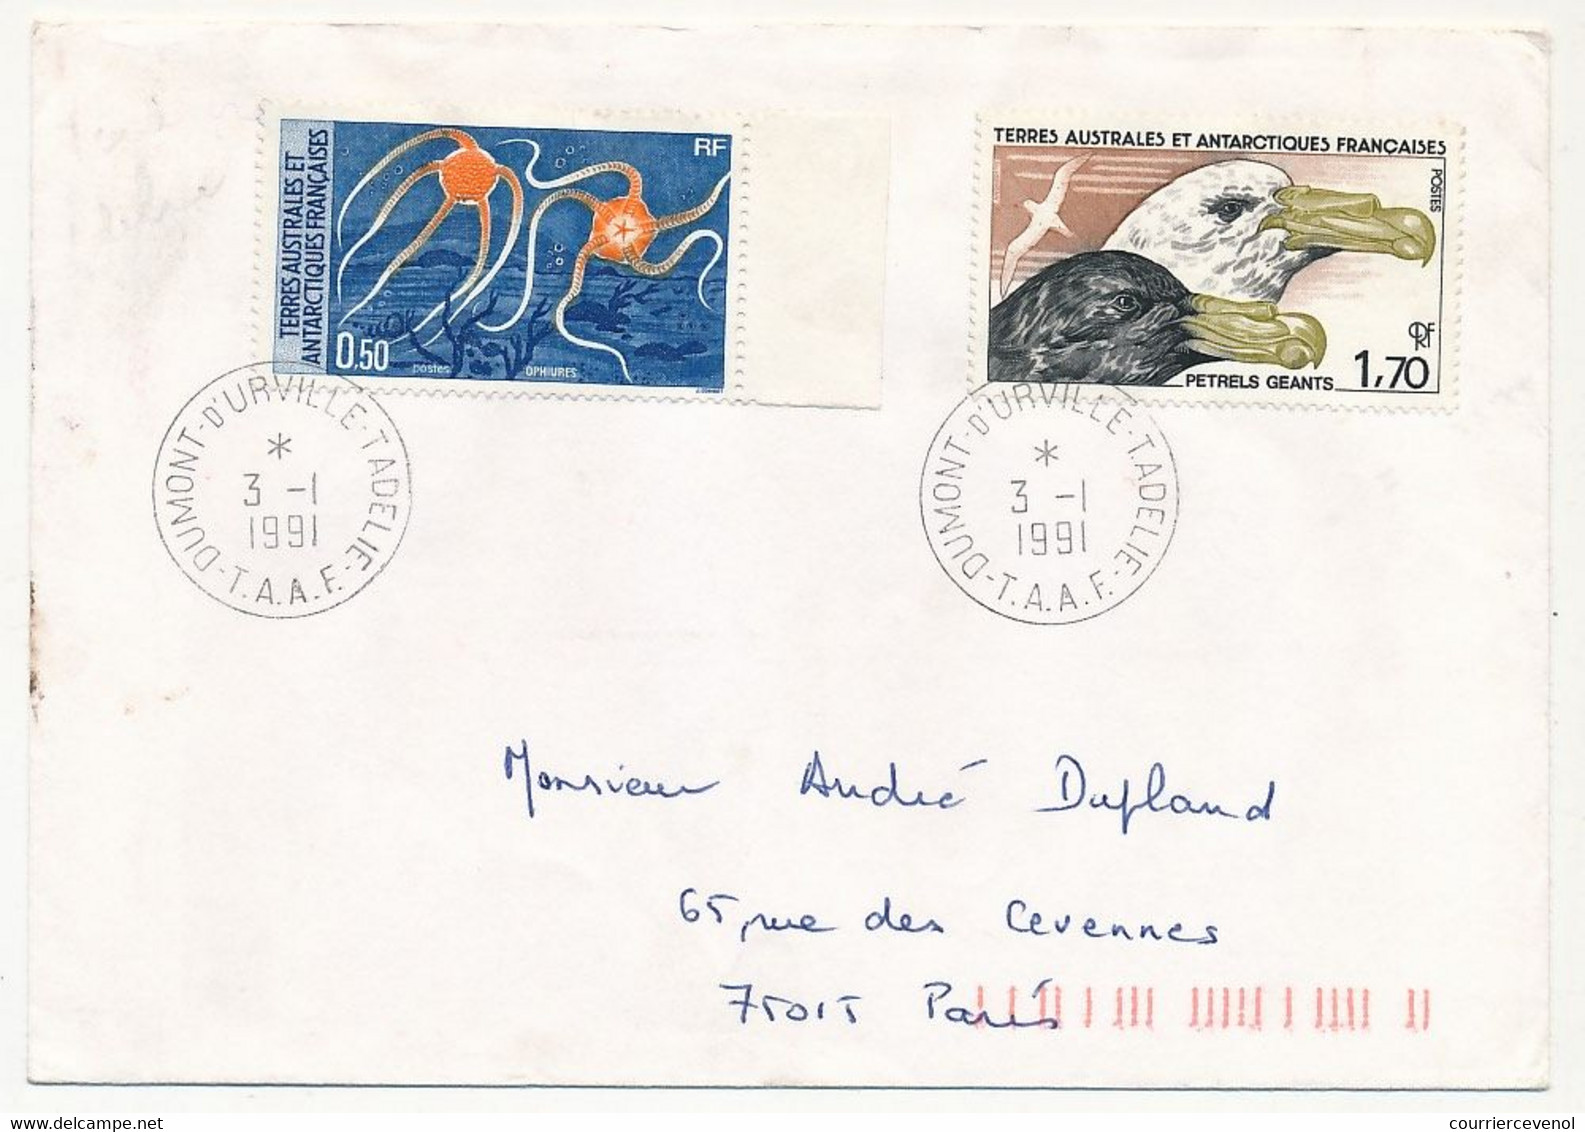 TAAF - Env. 1,70 Petrels Géants + 0,50 Ophiures - Dumont D'Urville T. Adélie - 3/1/1991 - Storia Postale